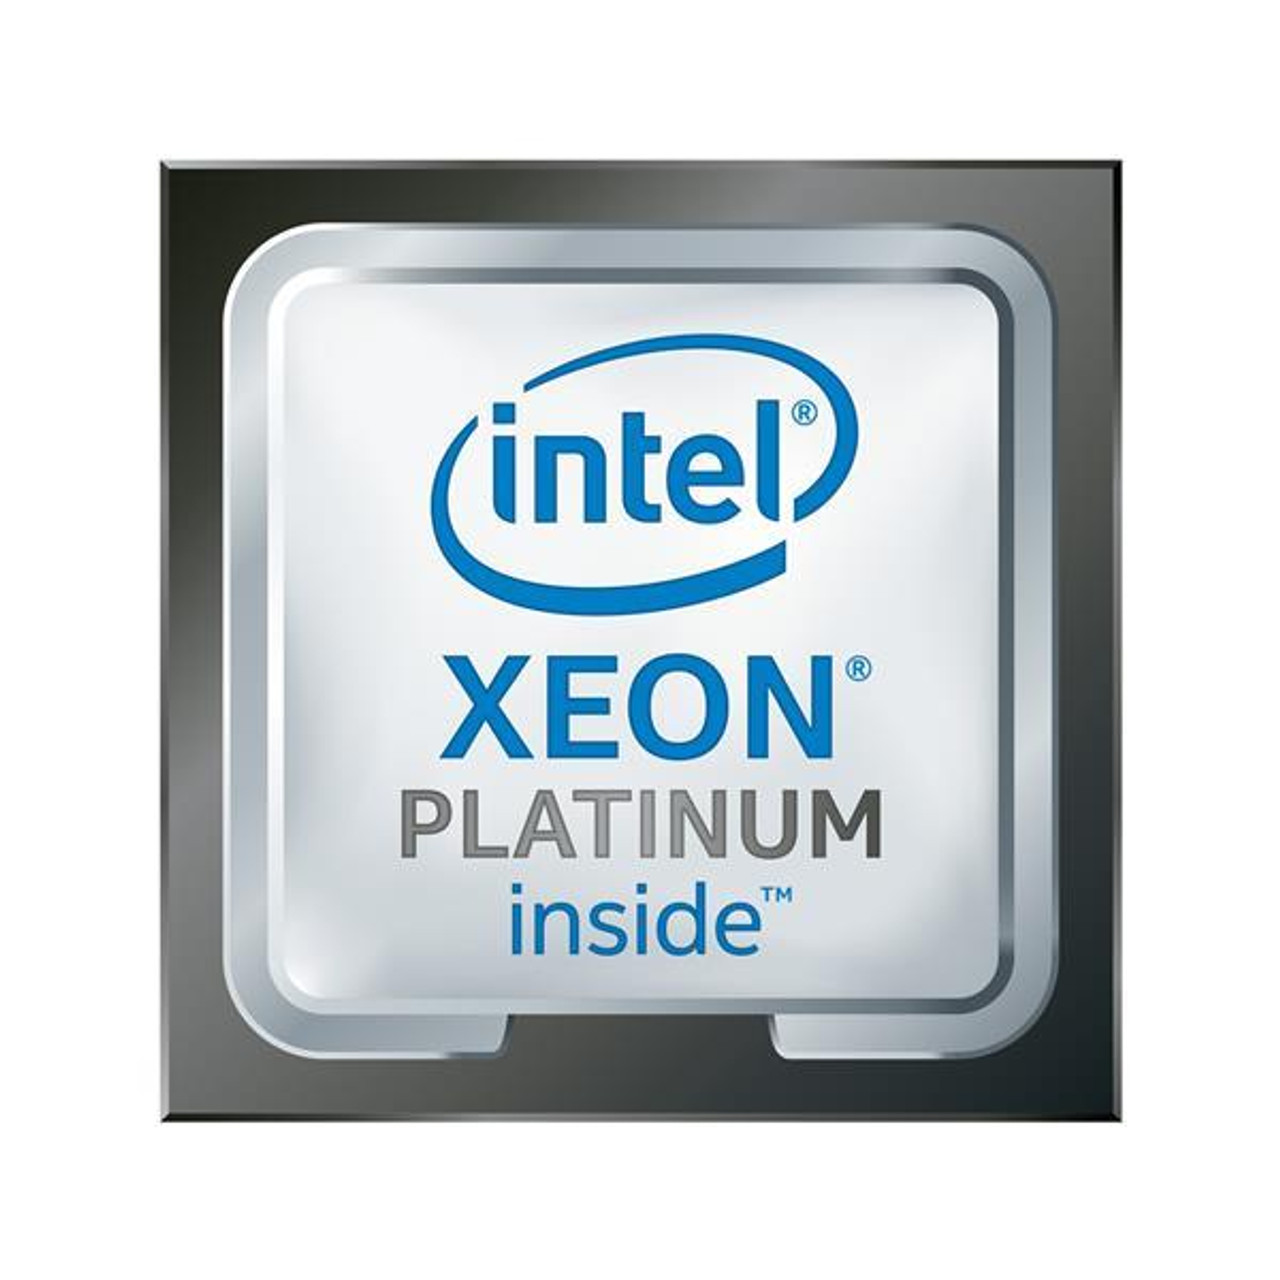 Platinum 8253 Intel Xeon Platinum 16-Core 2.20GHz 22MB Cache Socket FCLGA3647 Processor Platinum